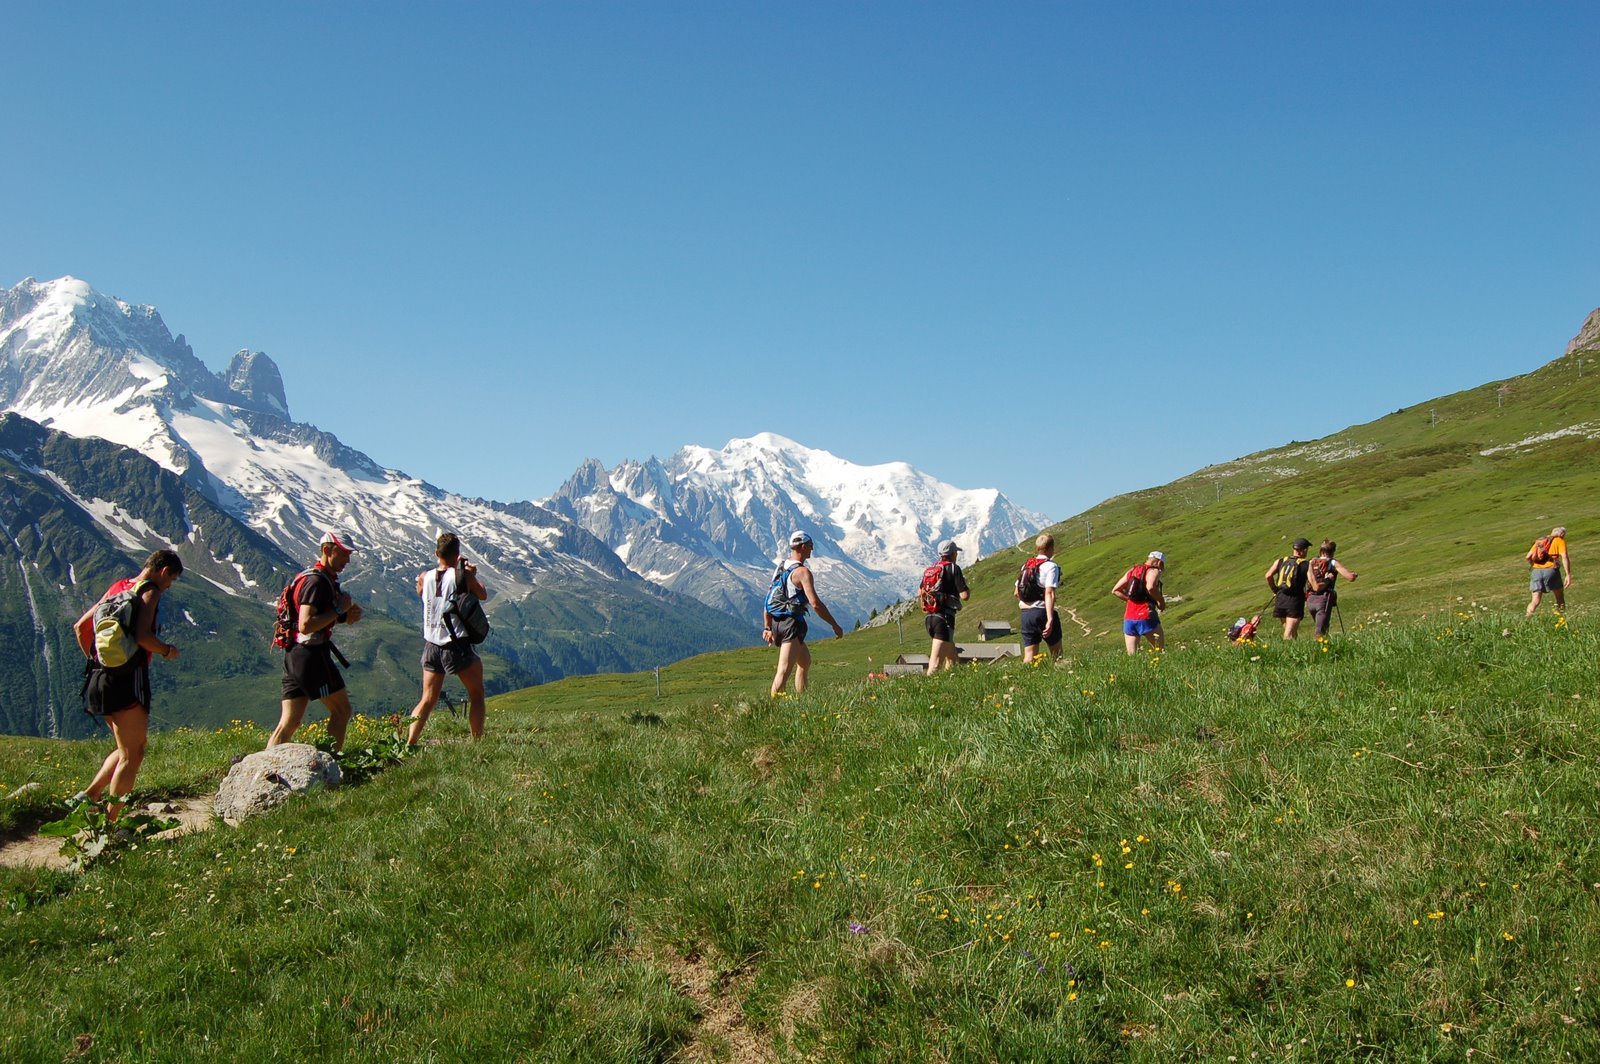 Marathon du Mont-Blanc